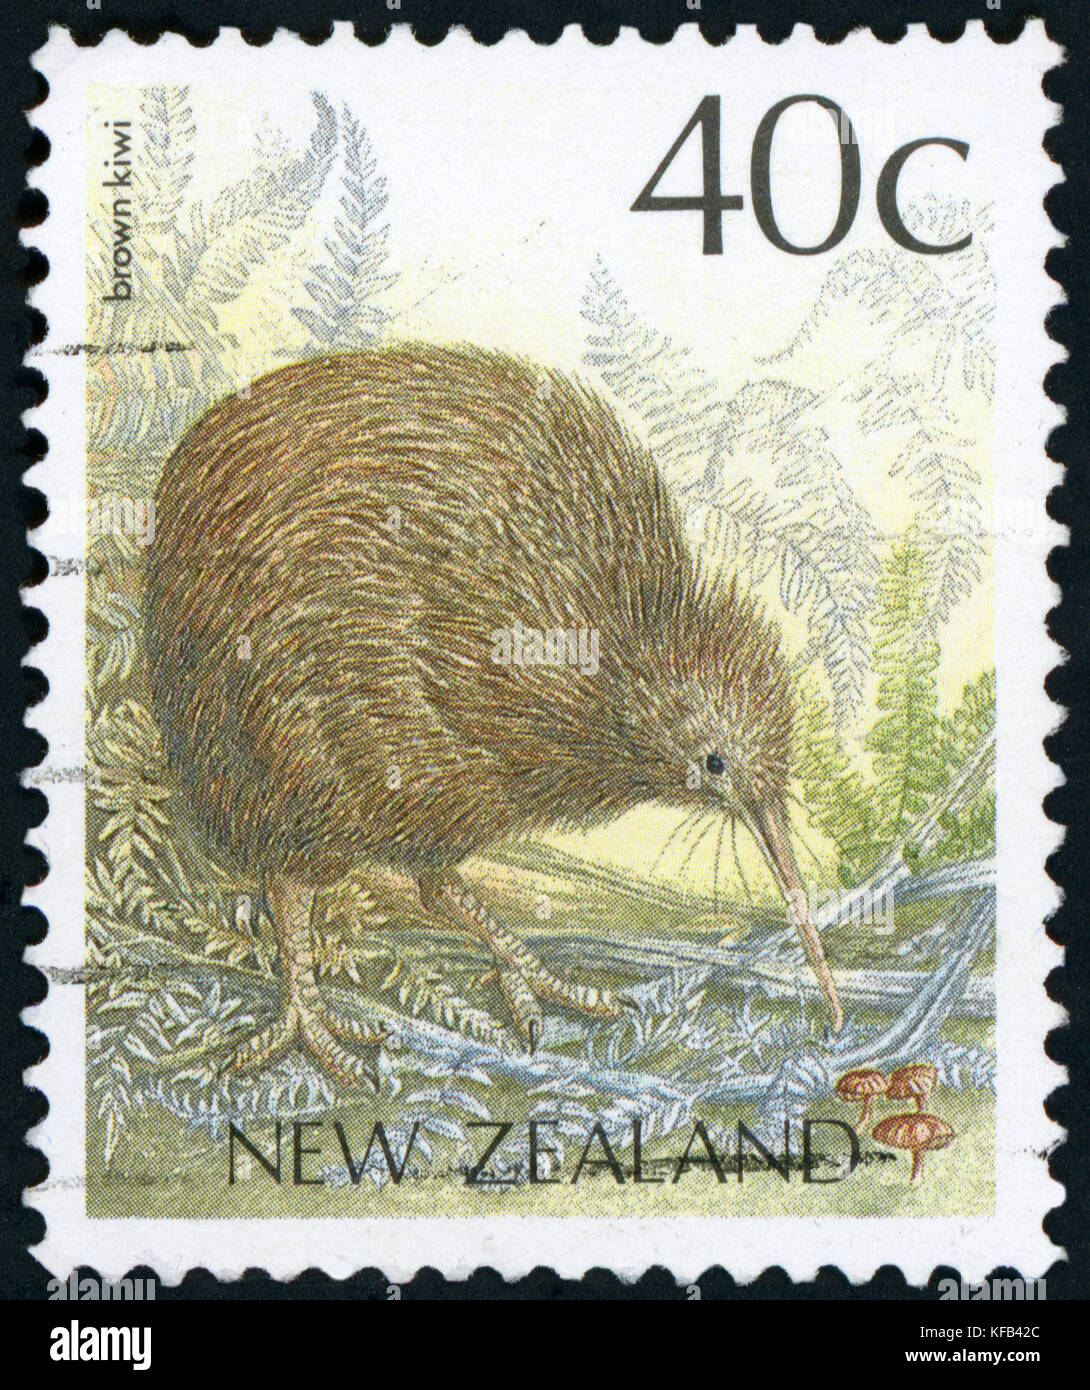 Timbre-poste (Nouvelle-Zélande - Kiwi brun) Banque D'Images